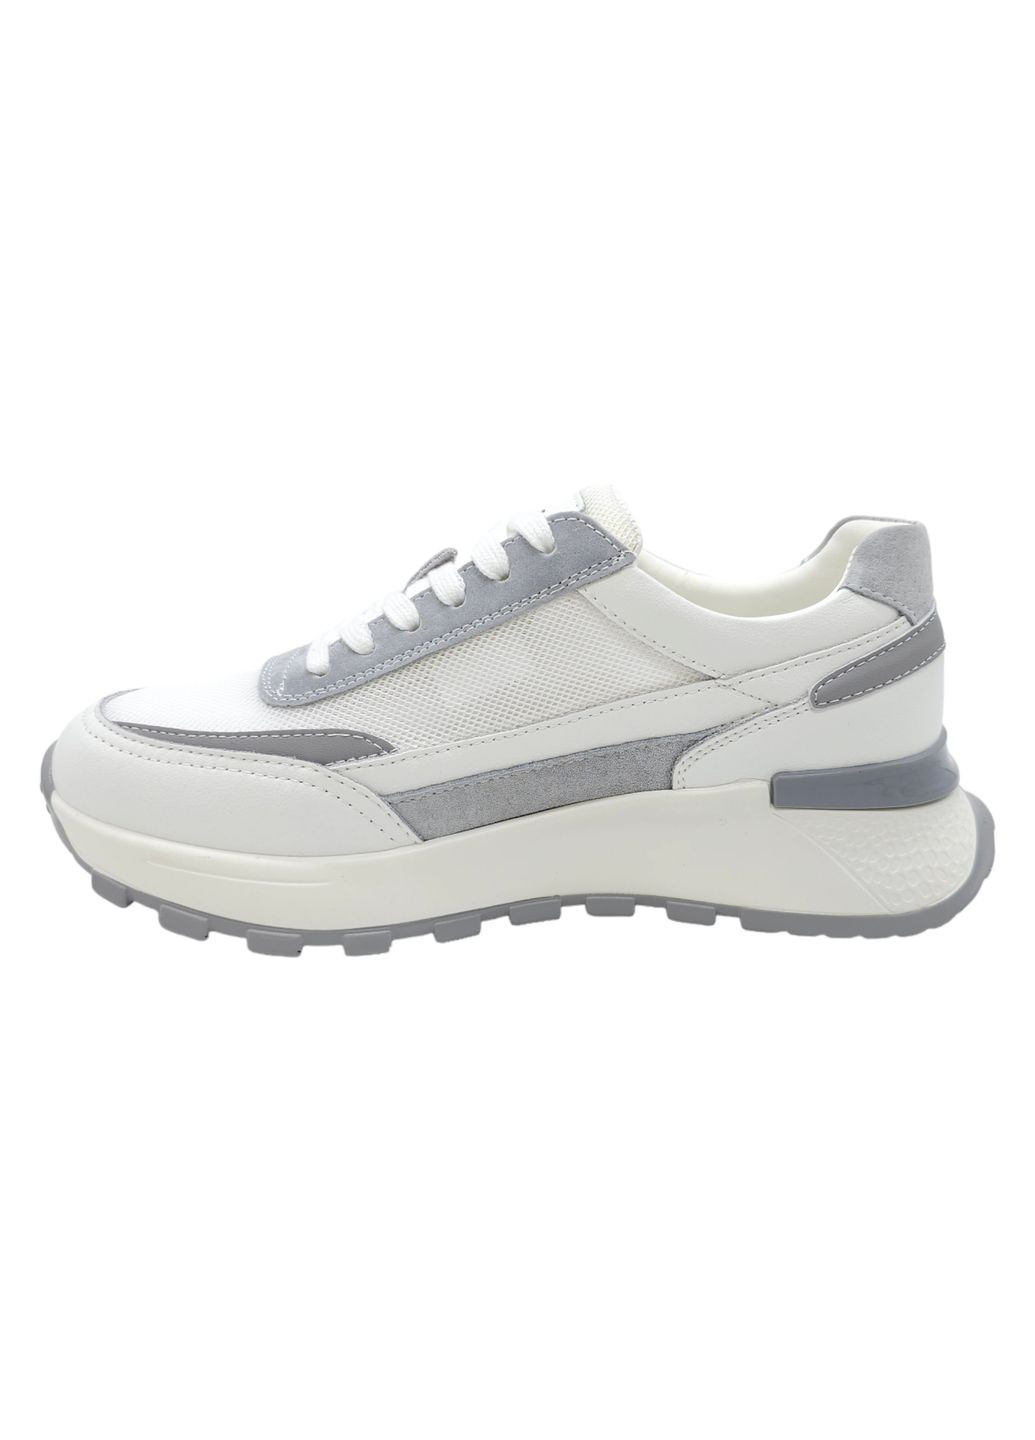 Белые всесезонные женские кроссовки белые кожаные l-10-54 23 см(р) Lonza